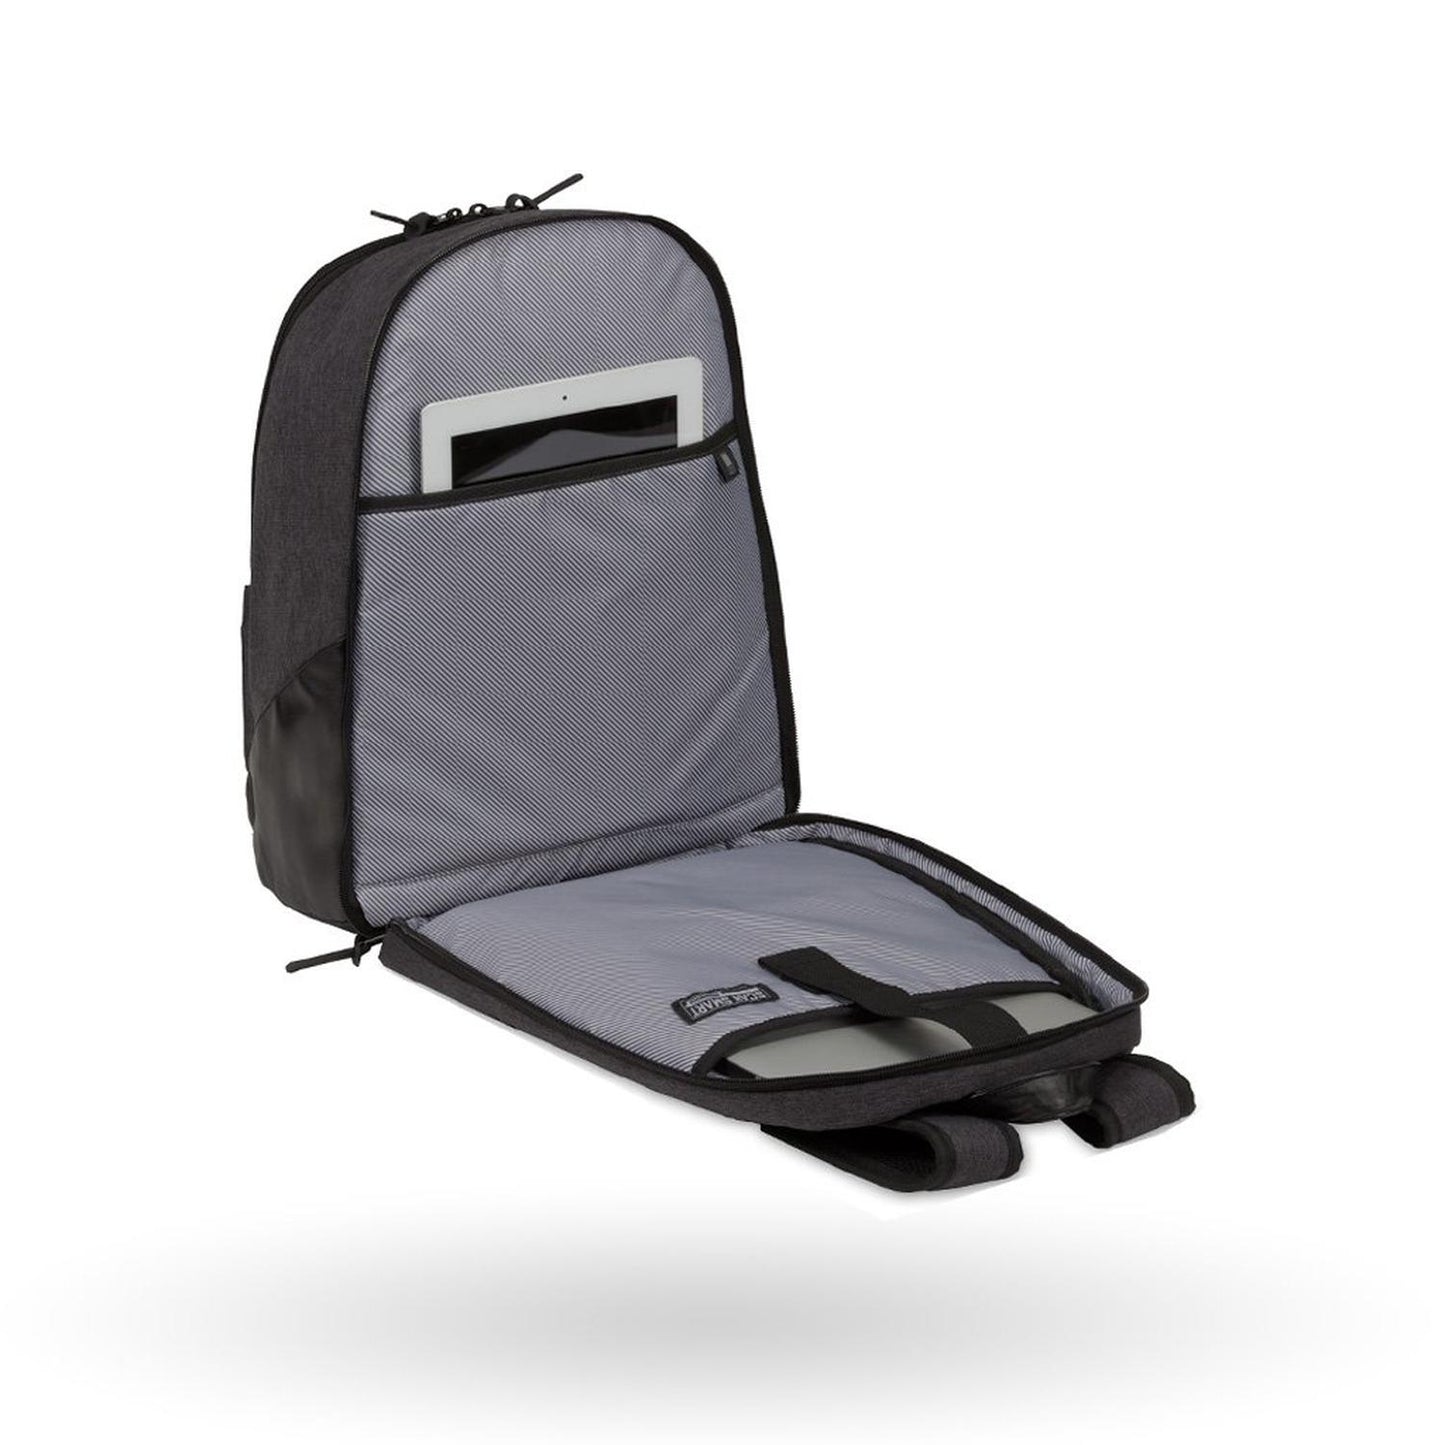 Mochila de viaje Swissgear Darky, para laptop de 13", 5755422424, color gris con negro, tecnología S